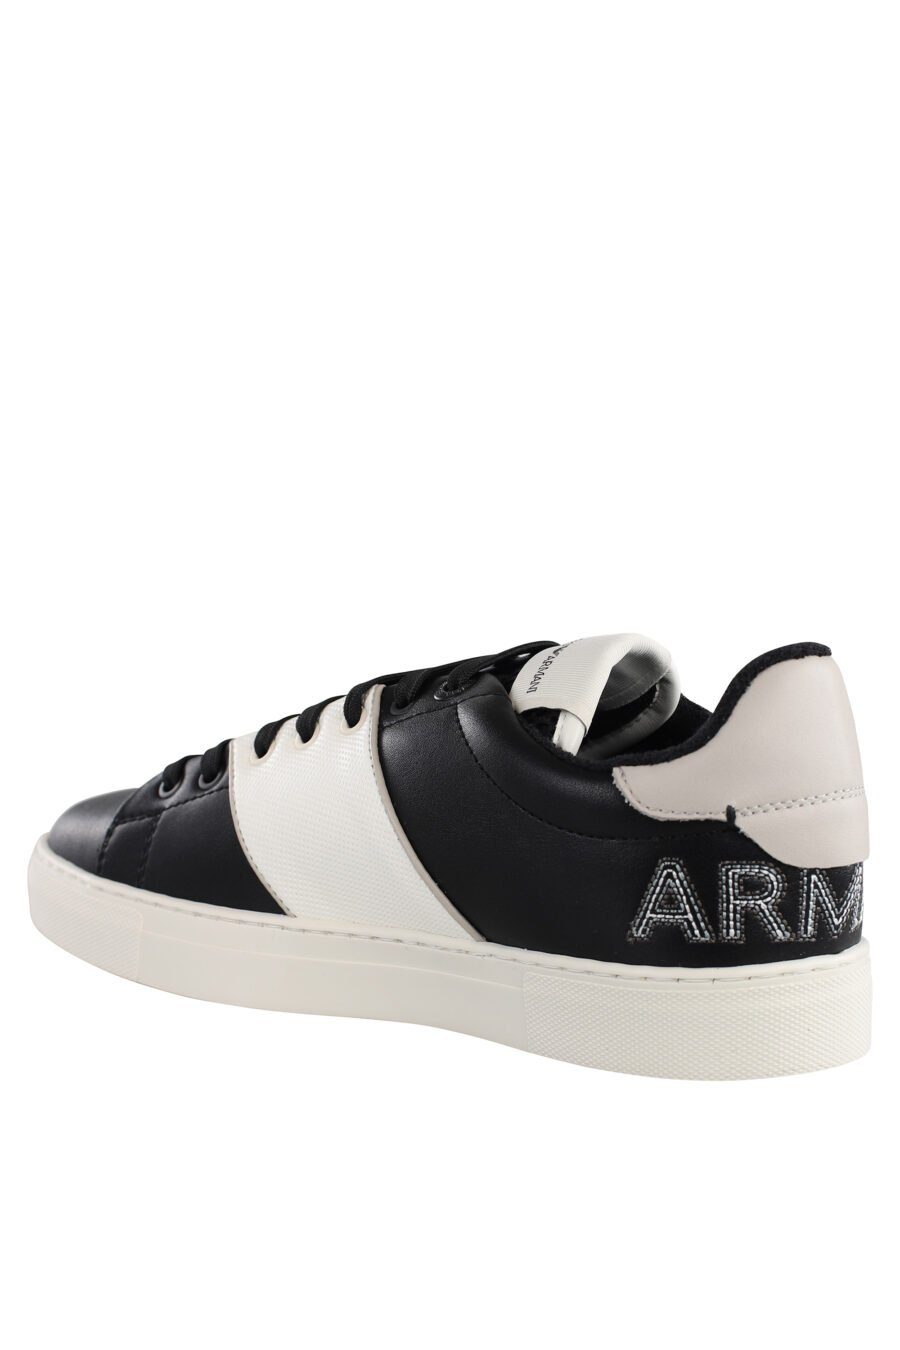 Zapatillas bicolor blancas y negras con logo bordado con interior de felpa - IMG 7140